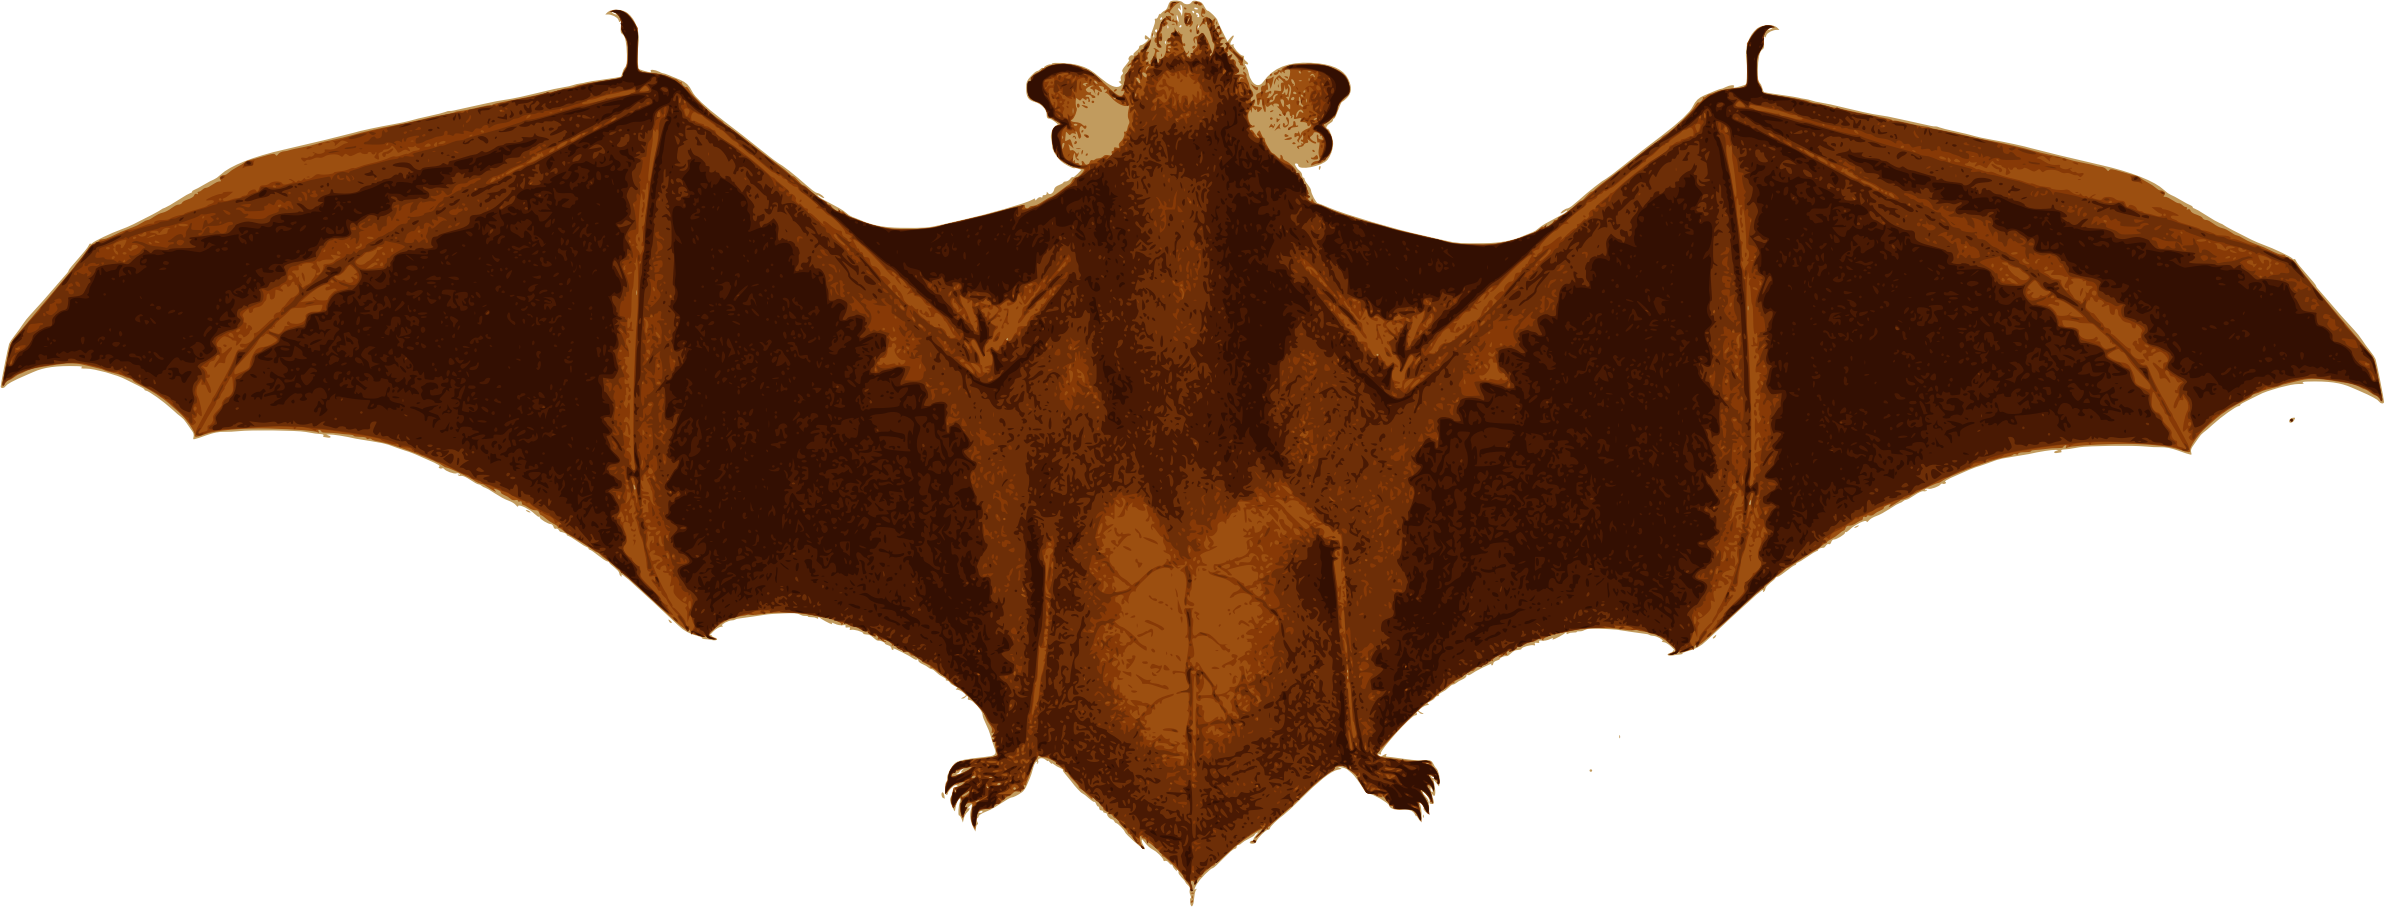 Big Image - Bat (2385x907)